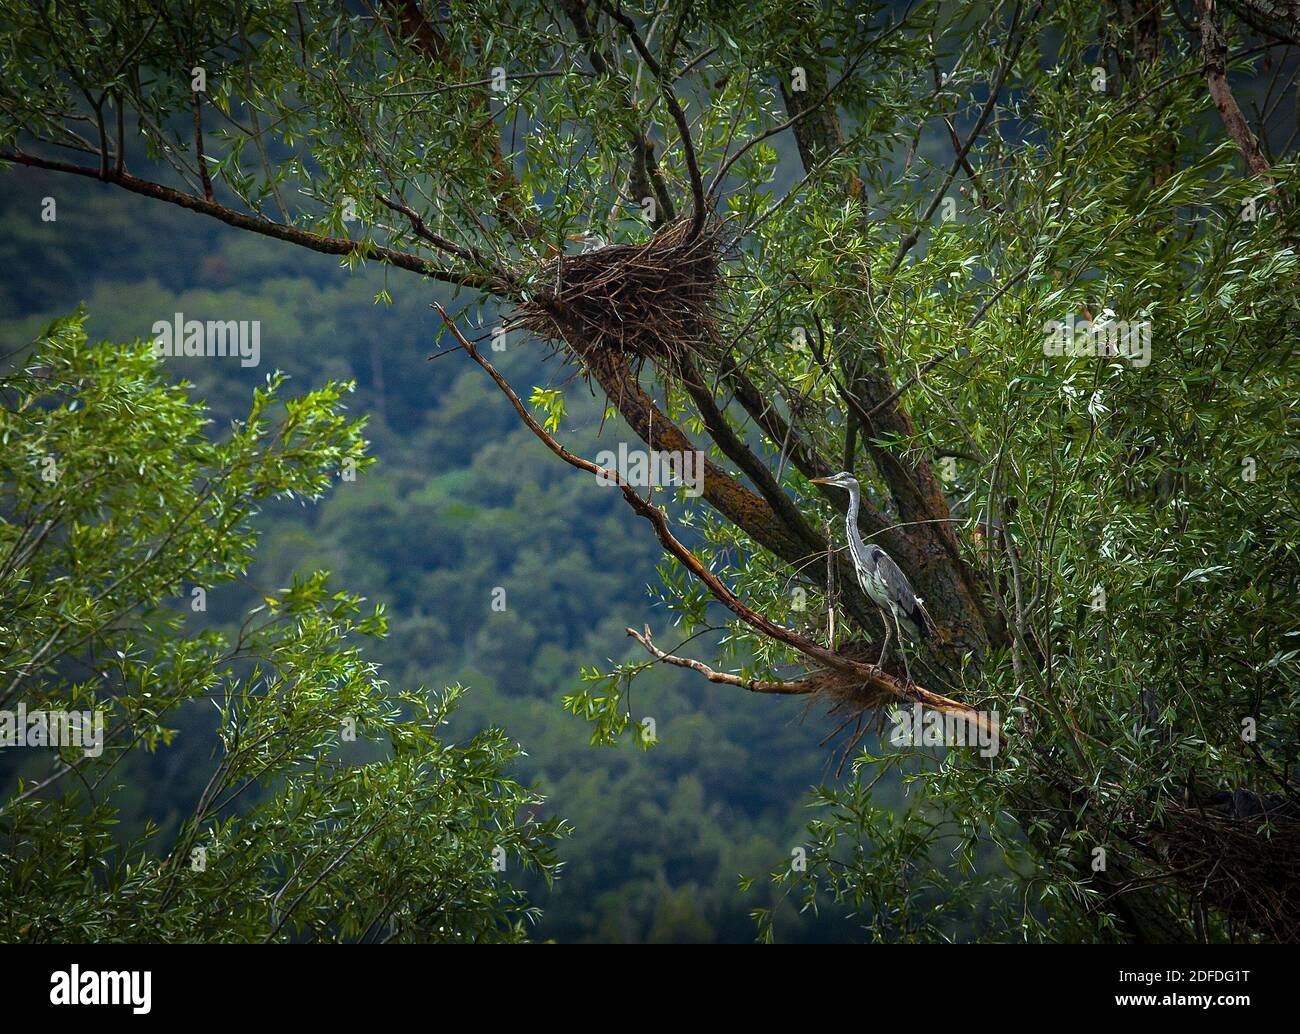 Entlang der Ufer des Flusses Tirino nisten mehrere Vogelarten, darunter der Graureiher. Abruzzen, Italien, Europa Stockfoto